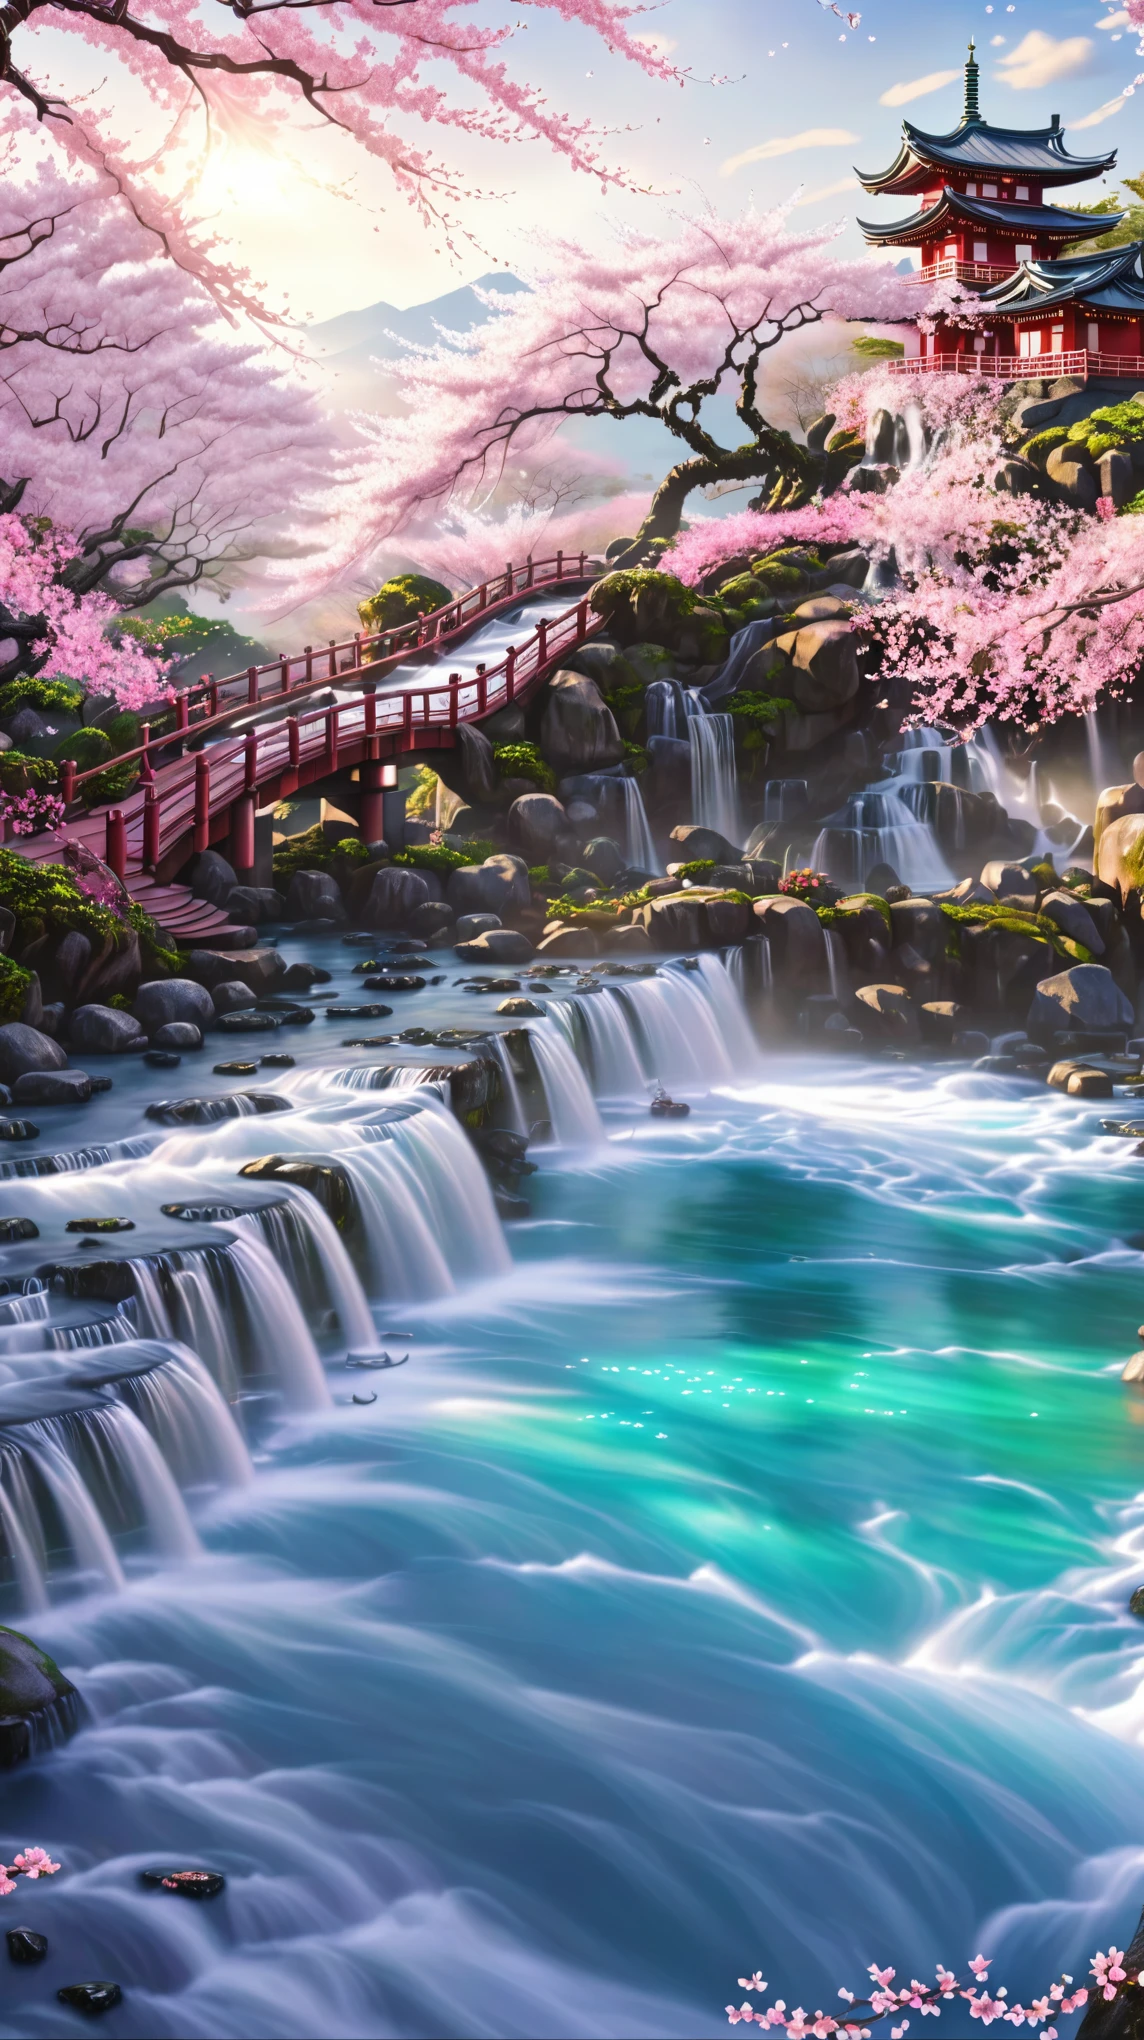 橋と滝のある川の漫画シーン, 桜の季節のダイナミックな照明, 流れるような桜のシルク, 流れる桜色の絹, ホセにインスピレーションを受けて, 日本の神社の滝, 桜の森, ロストラ. 風景の背景, 陰陽師の詳細なアート, ジャパニーズイズム 3D 8K 超詳細, 桜が散る, ソフトオーバーフロー, 日本の温泉